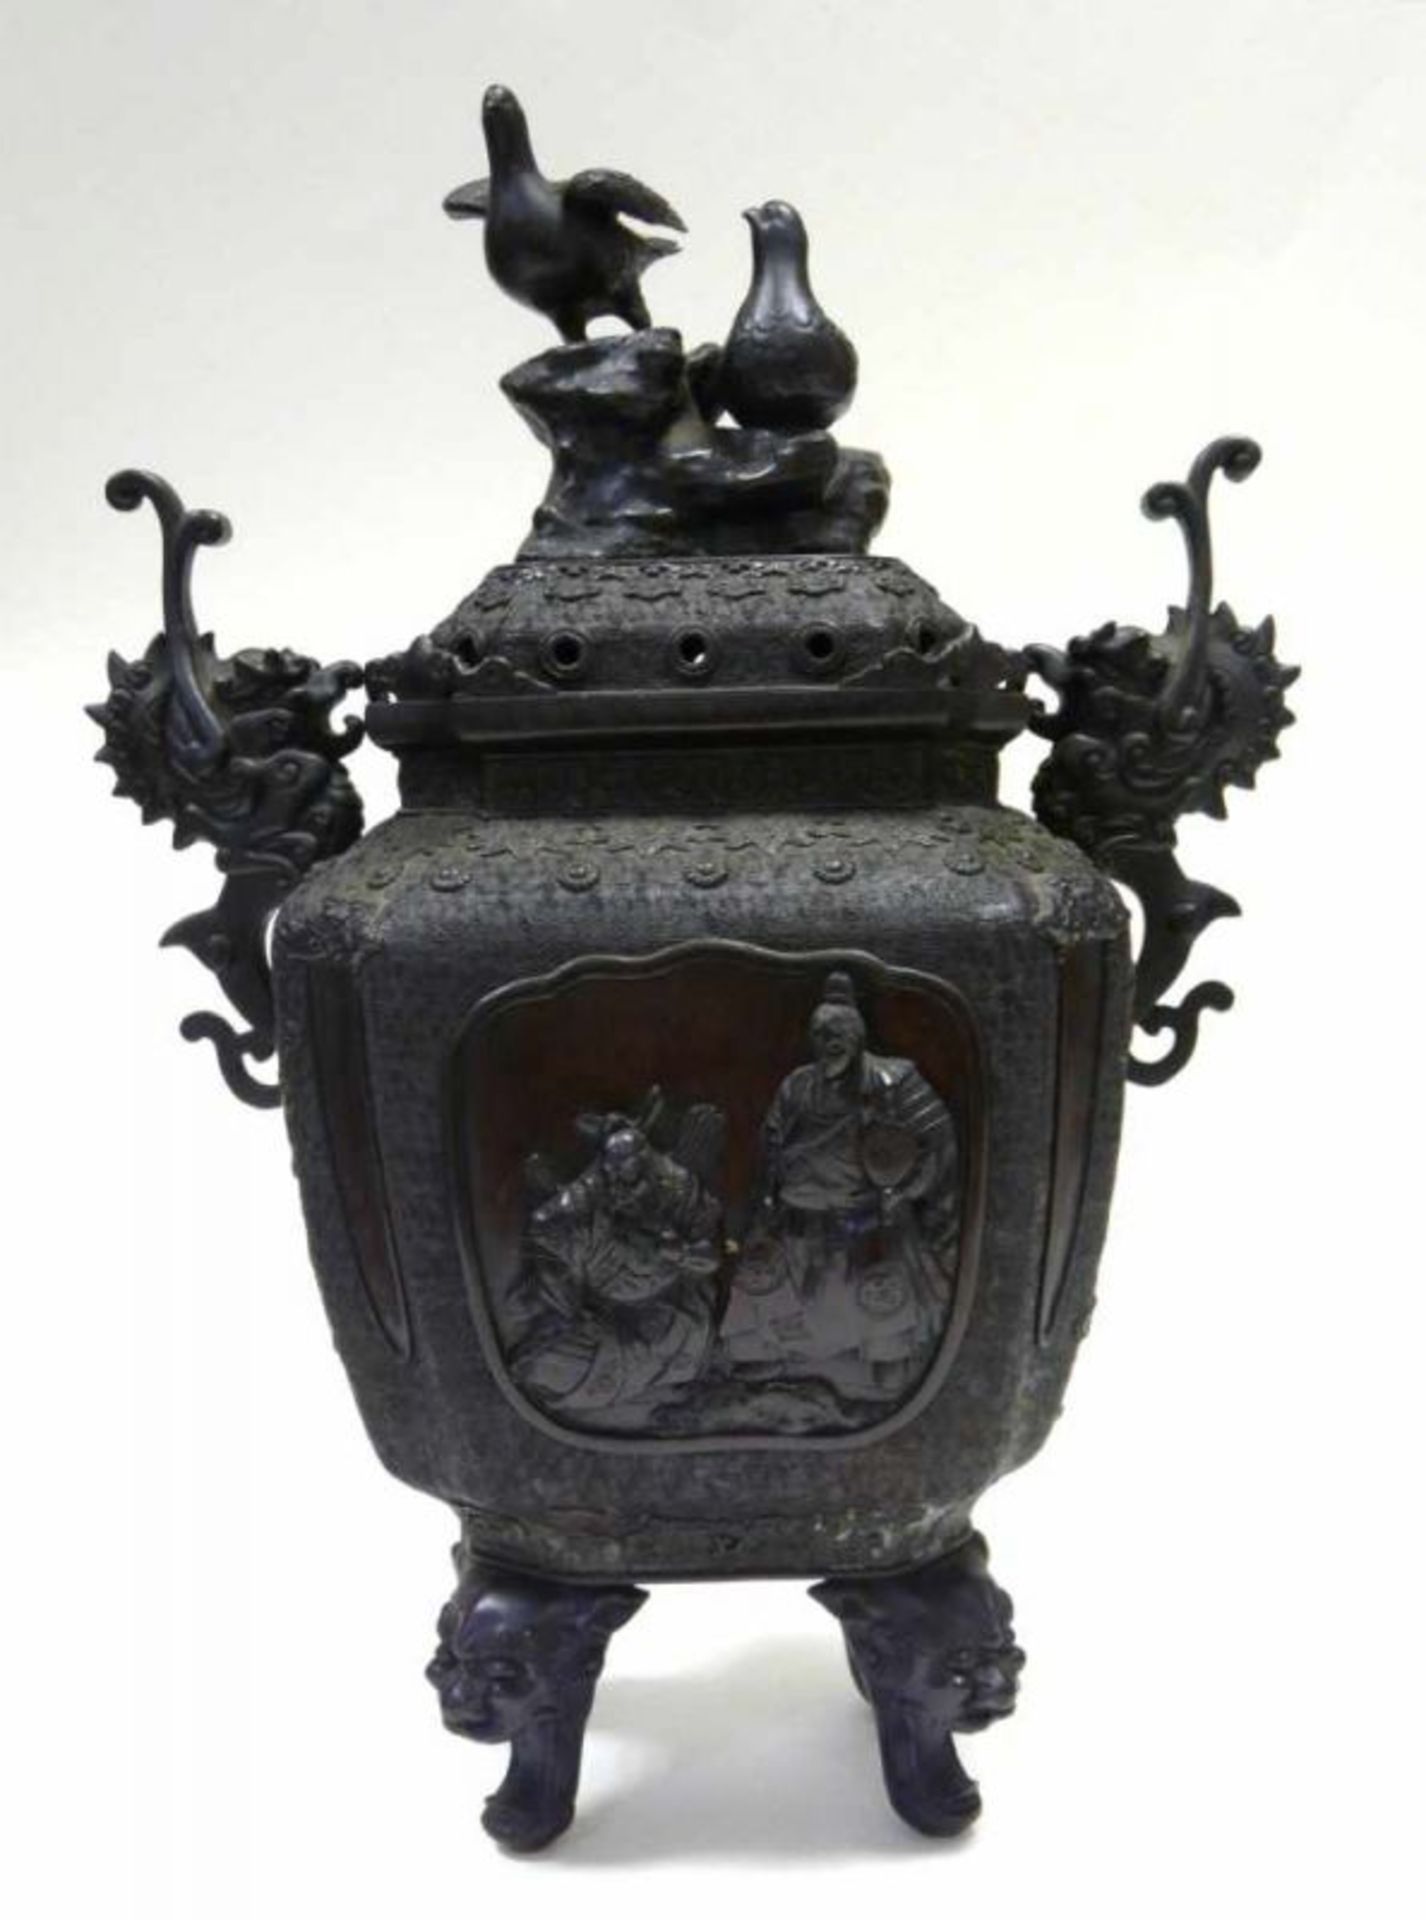 Großes Räuchergefäß ChinaChina, Bronze, seit ca. 1860 in Familienbesitz. Großer Weihrauchbrenner auf